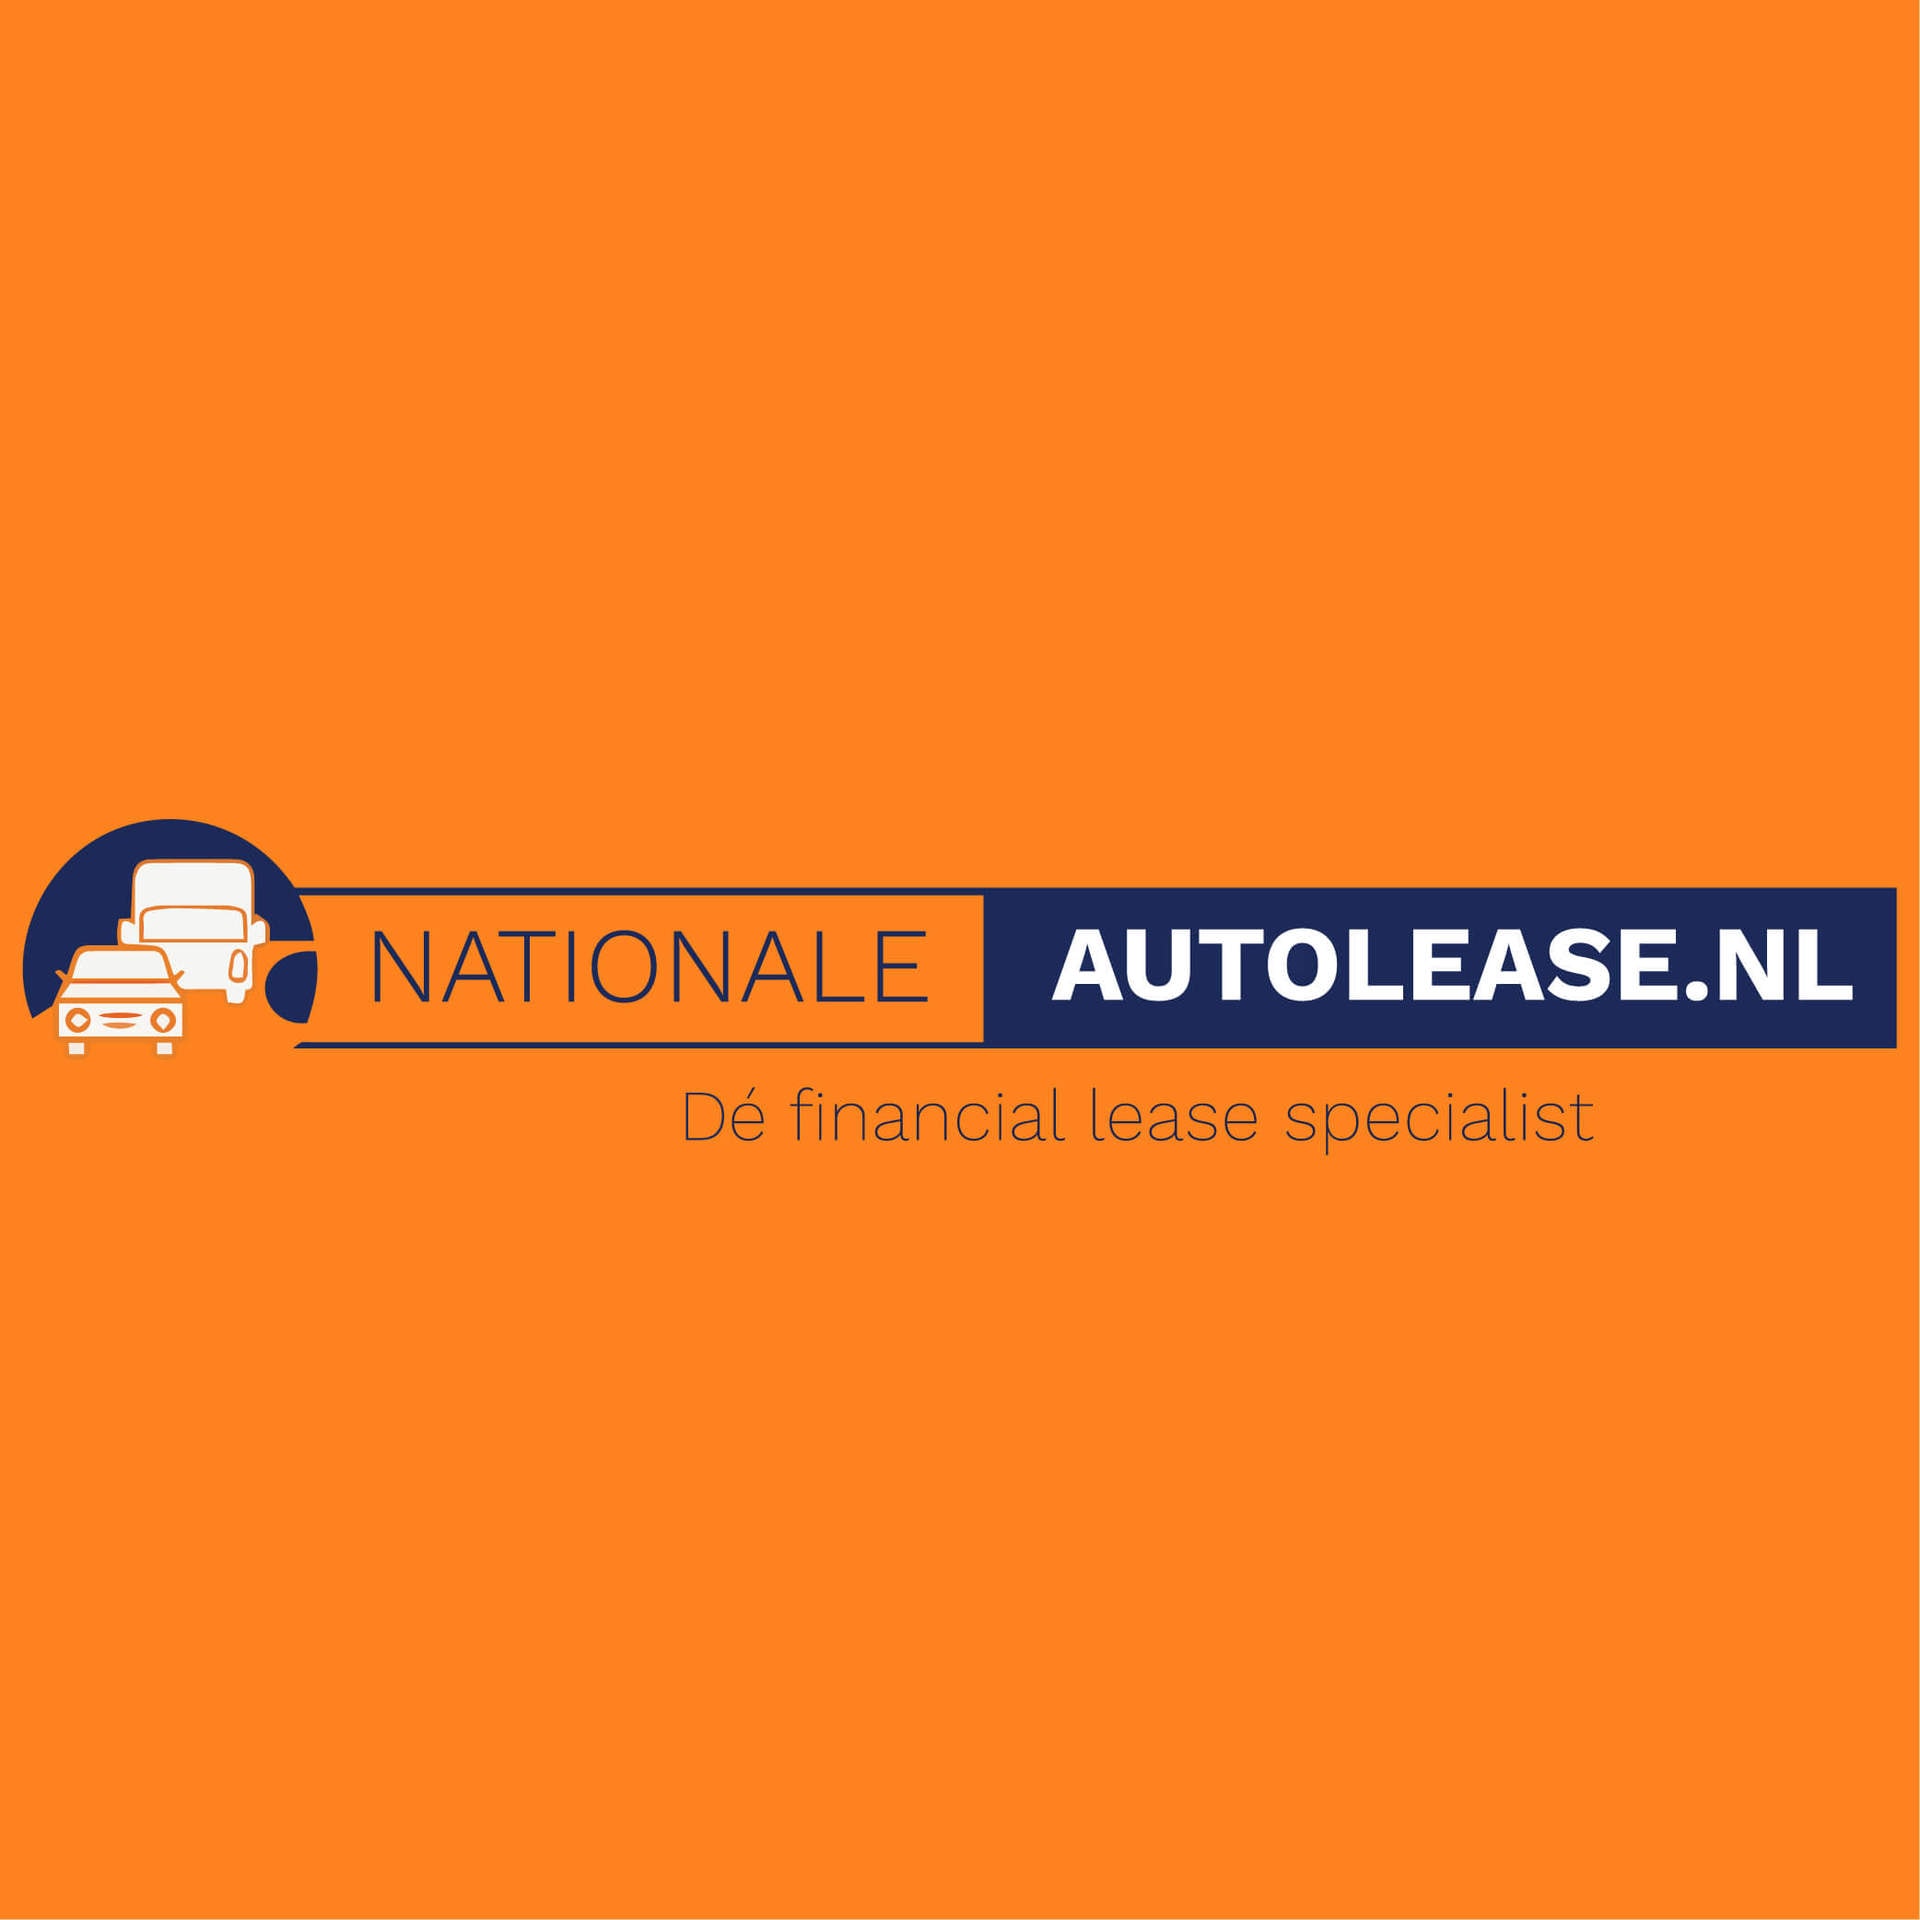 Financial leasen bij nationale autolease